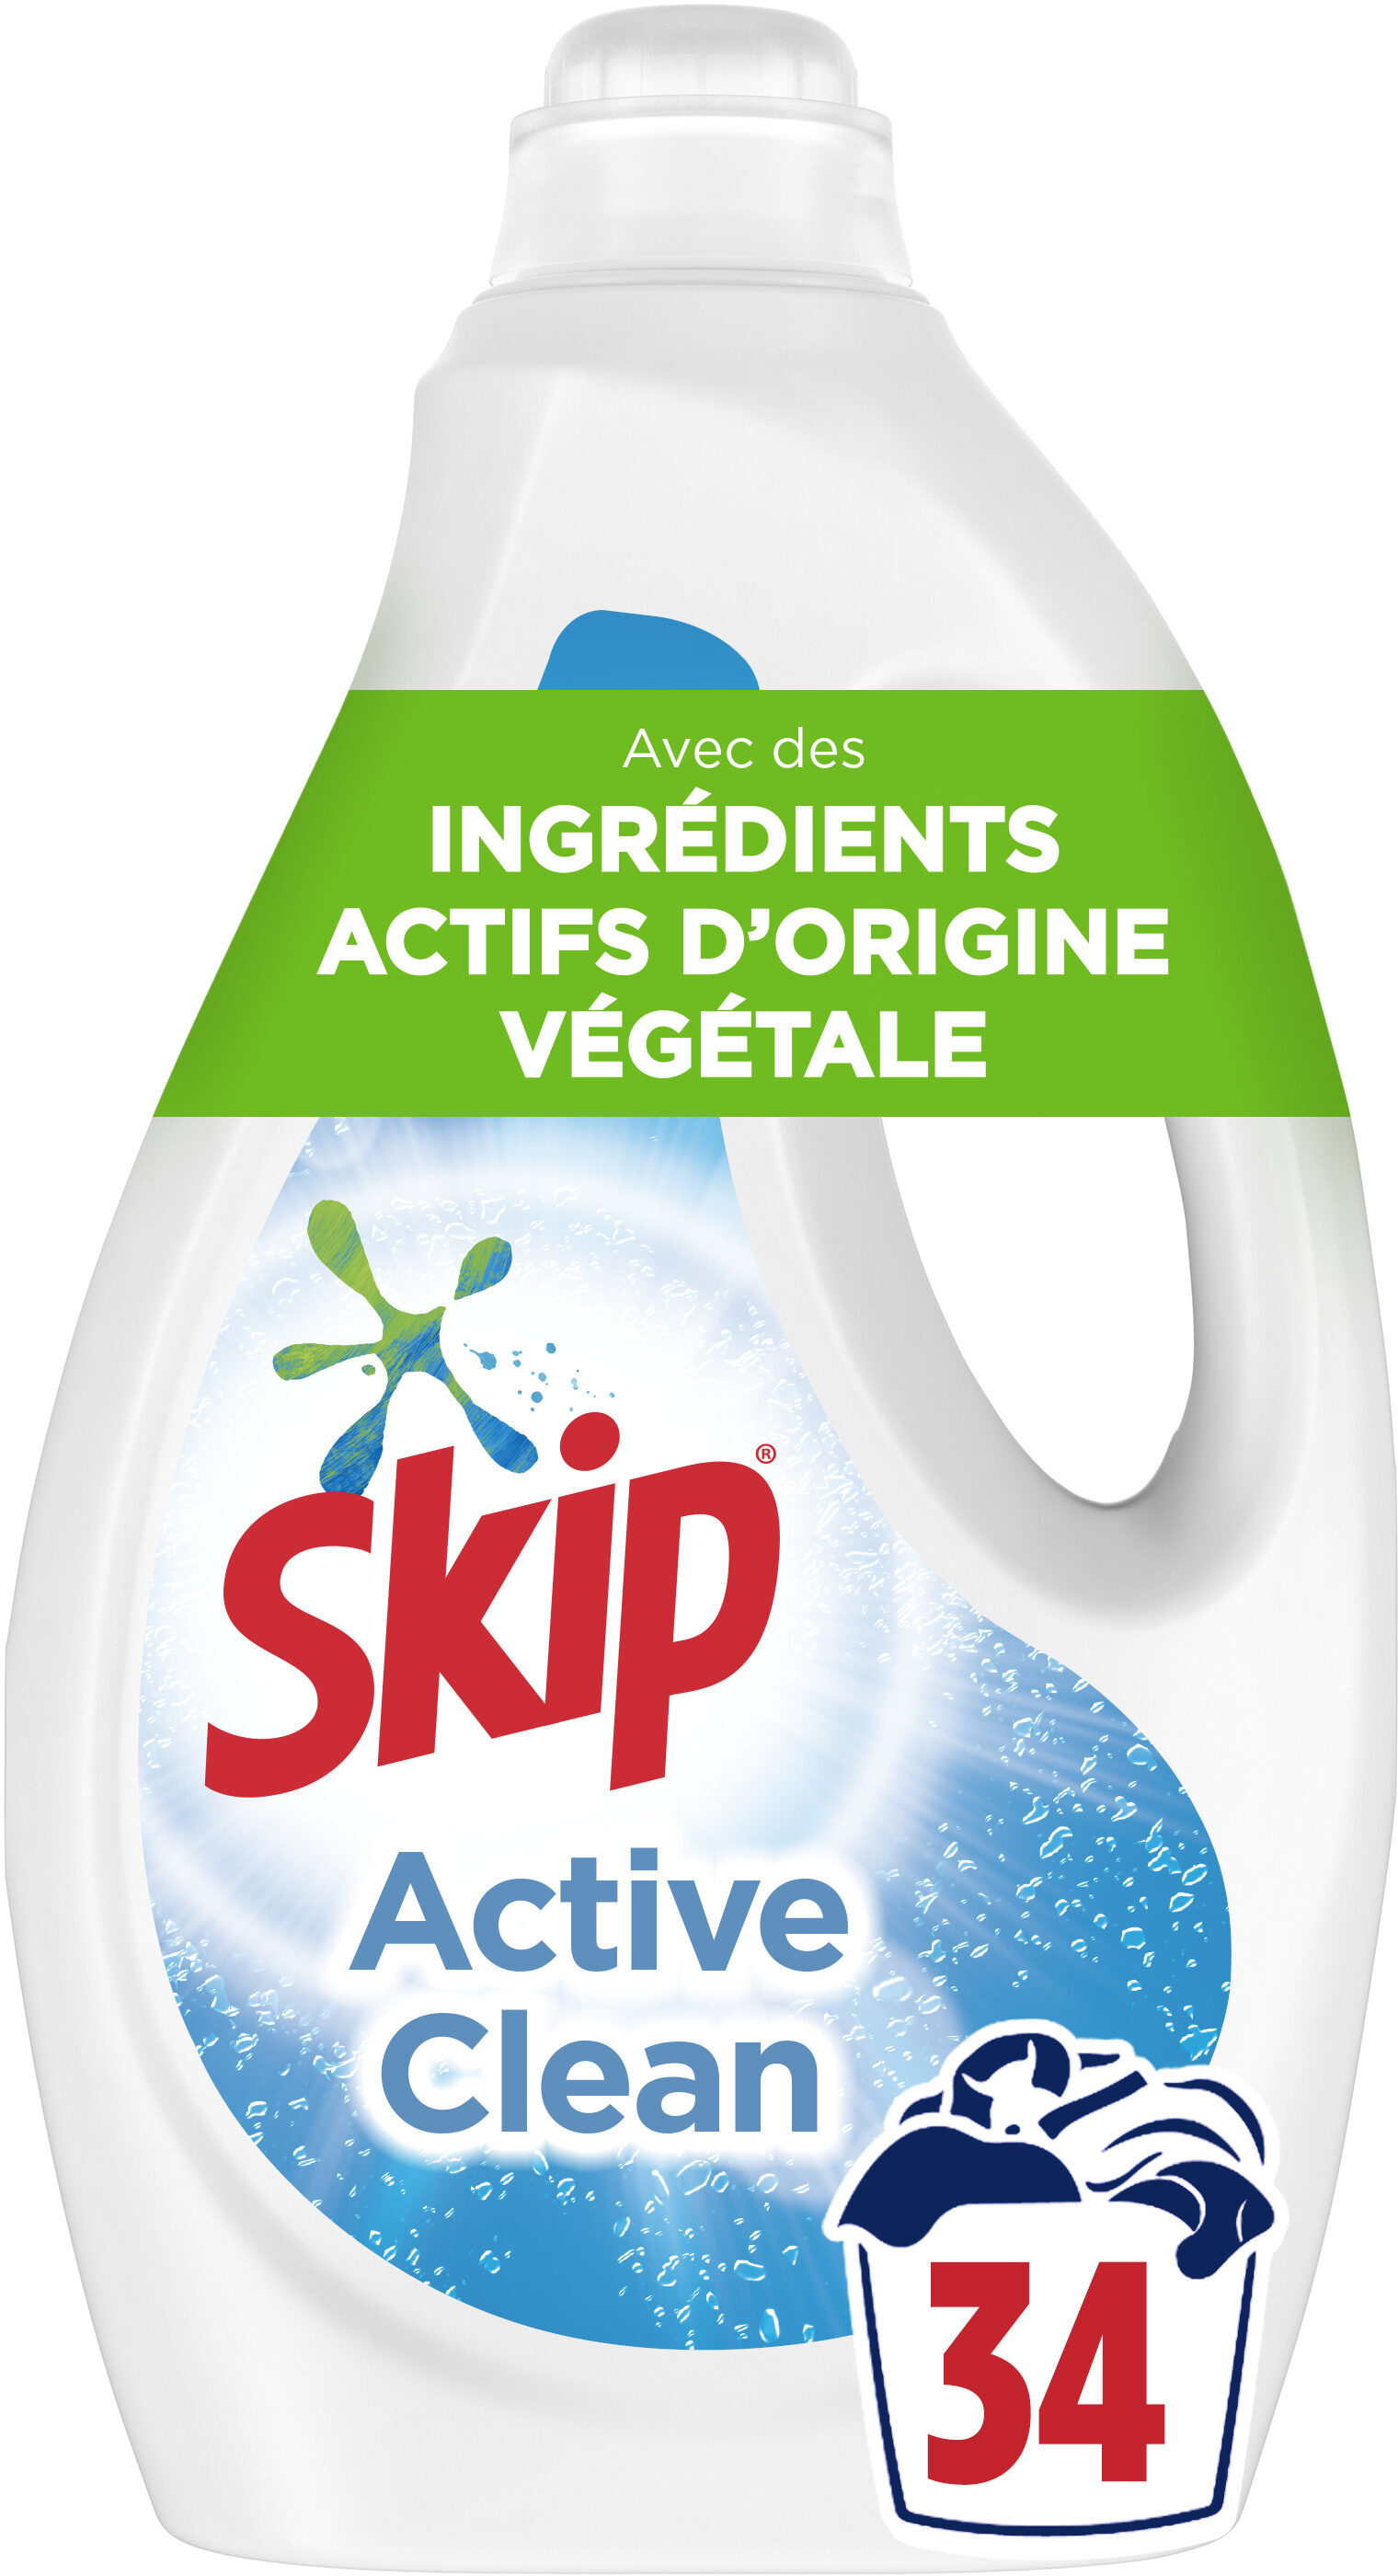 Skip Lessive Liquide Active Clean 1,7l - 34 Lavages - Produit - fr